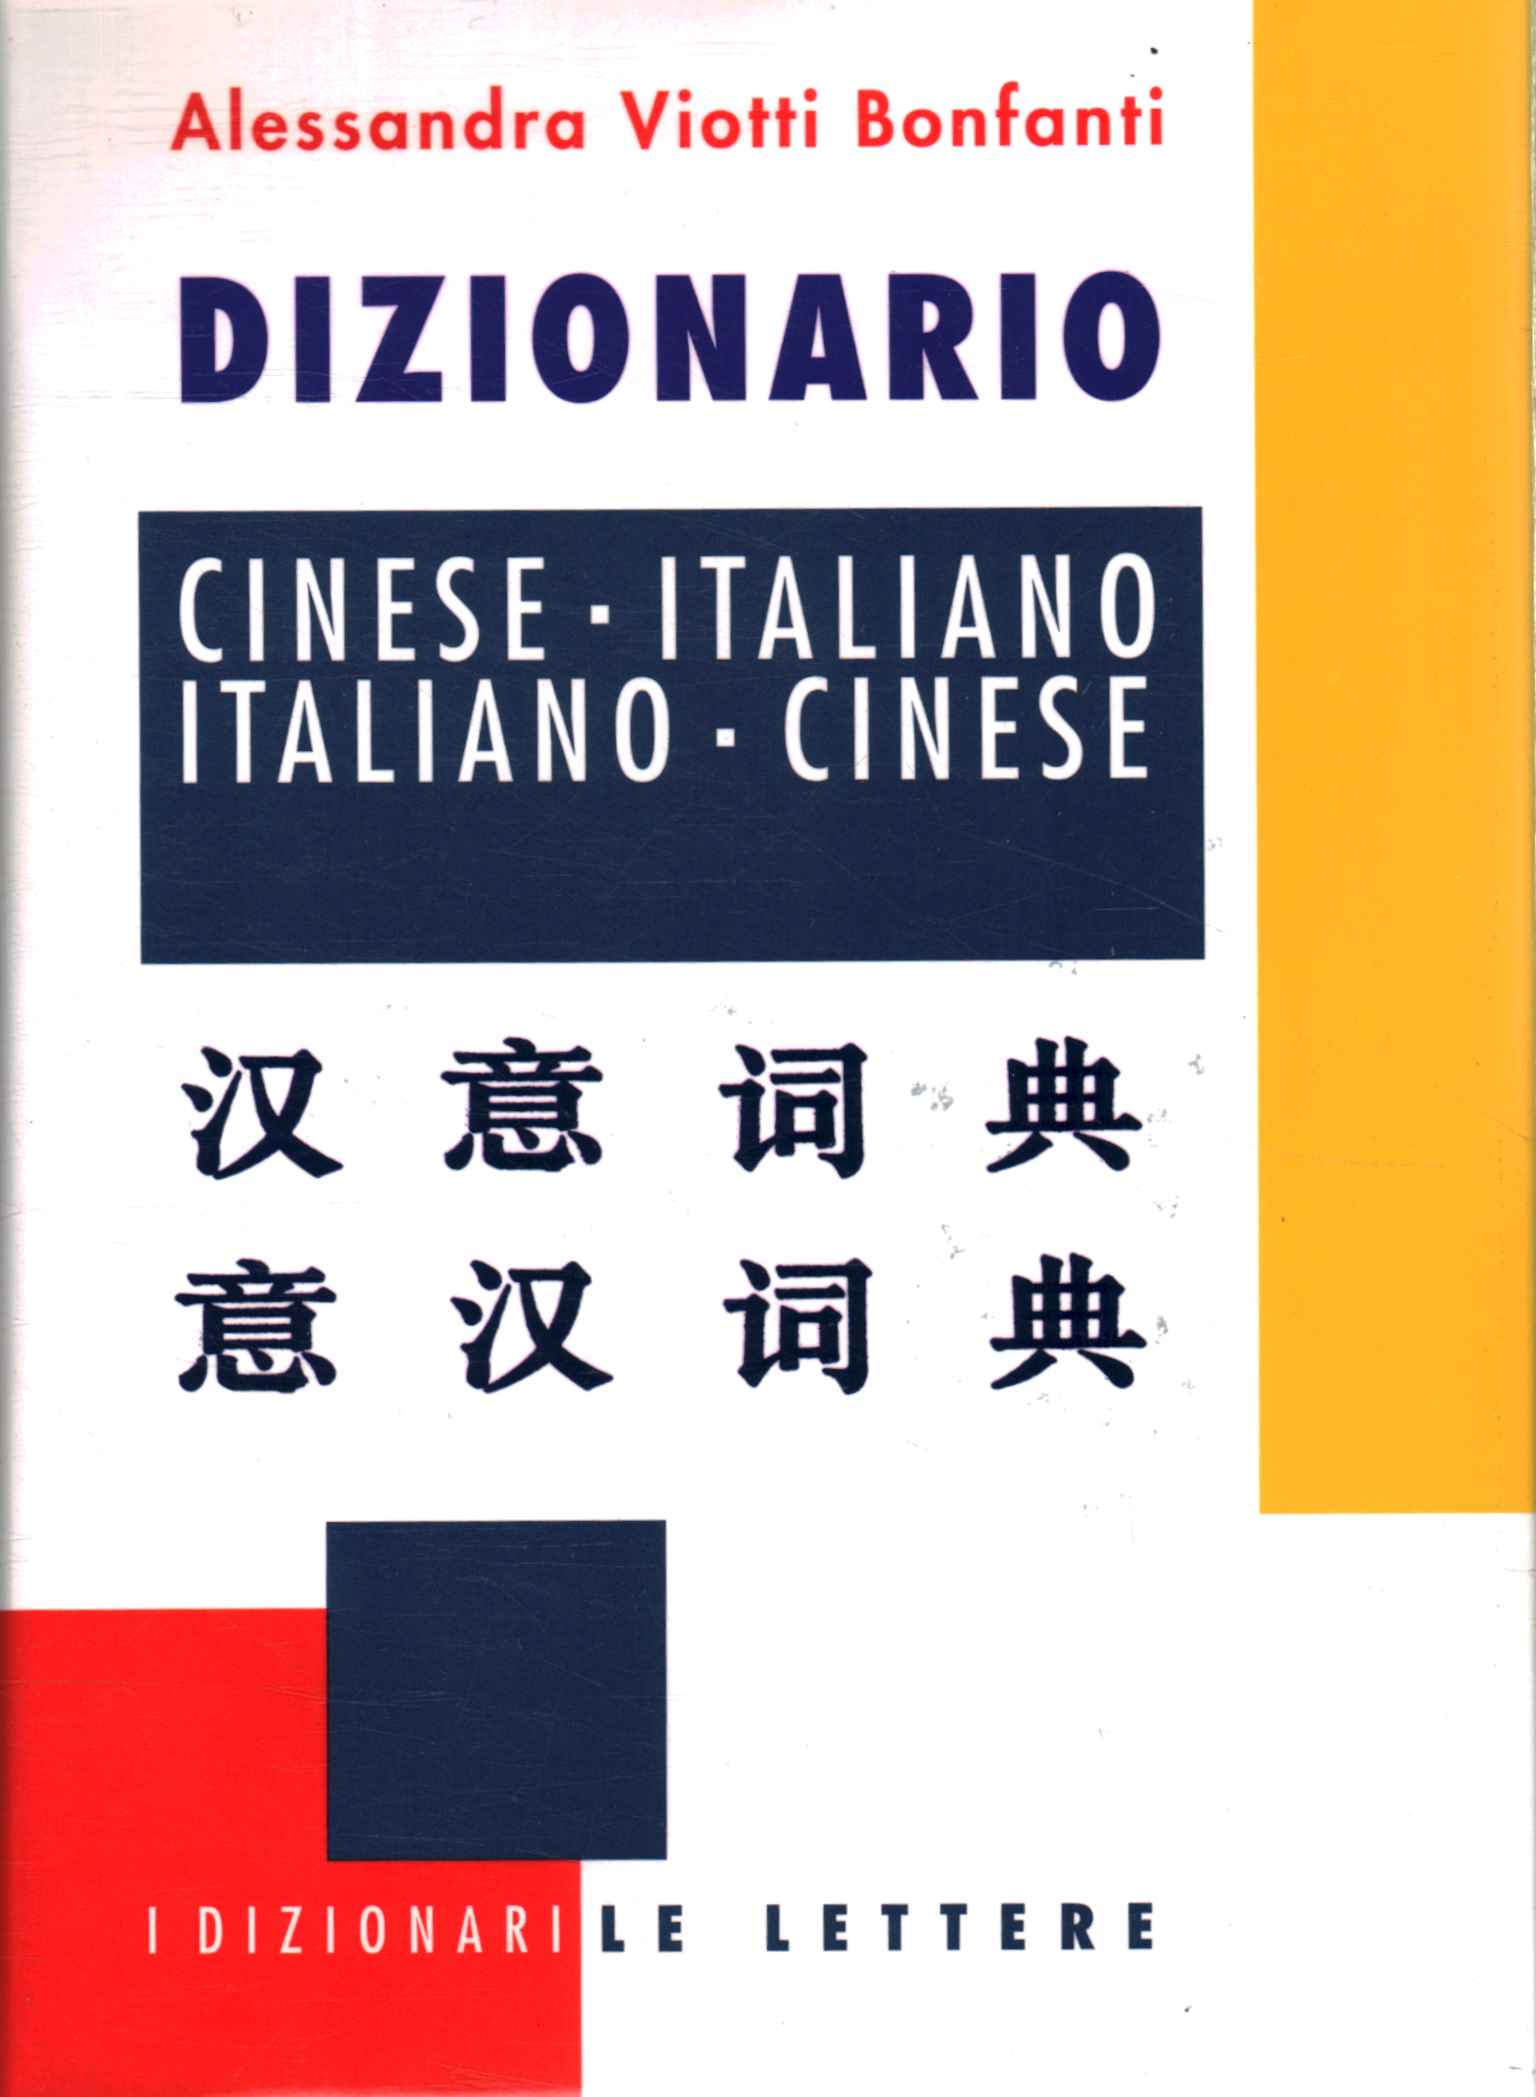 Chinese - Italian Italian Dictionary -,Chinese - Italian Italian Dictionary -,Chinese - Italian / Italian Dictionary%,Chinese - Italian Italian Dictionary -,Chinese - Italian / Italian Dictionary%